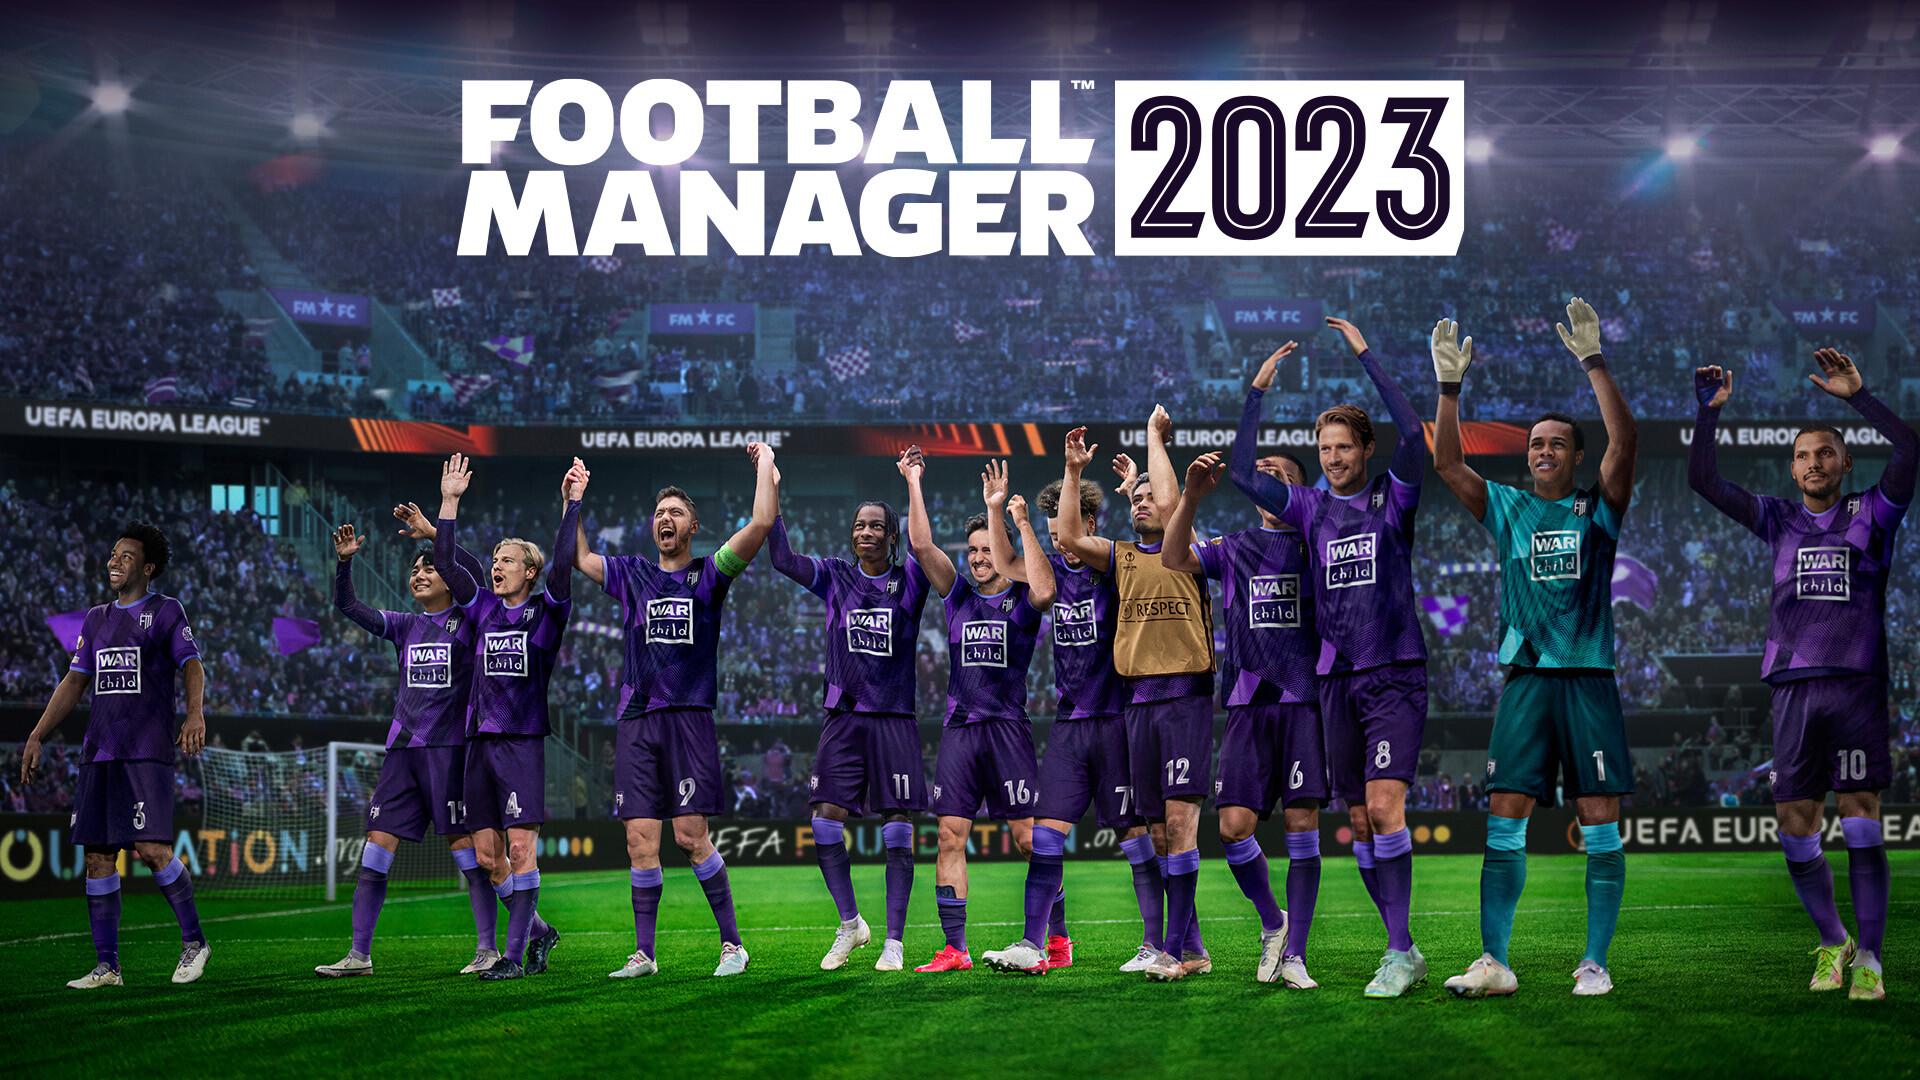 Tudo que você precisa saber sobre o Football Manager 2023 - DPF